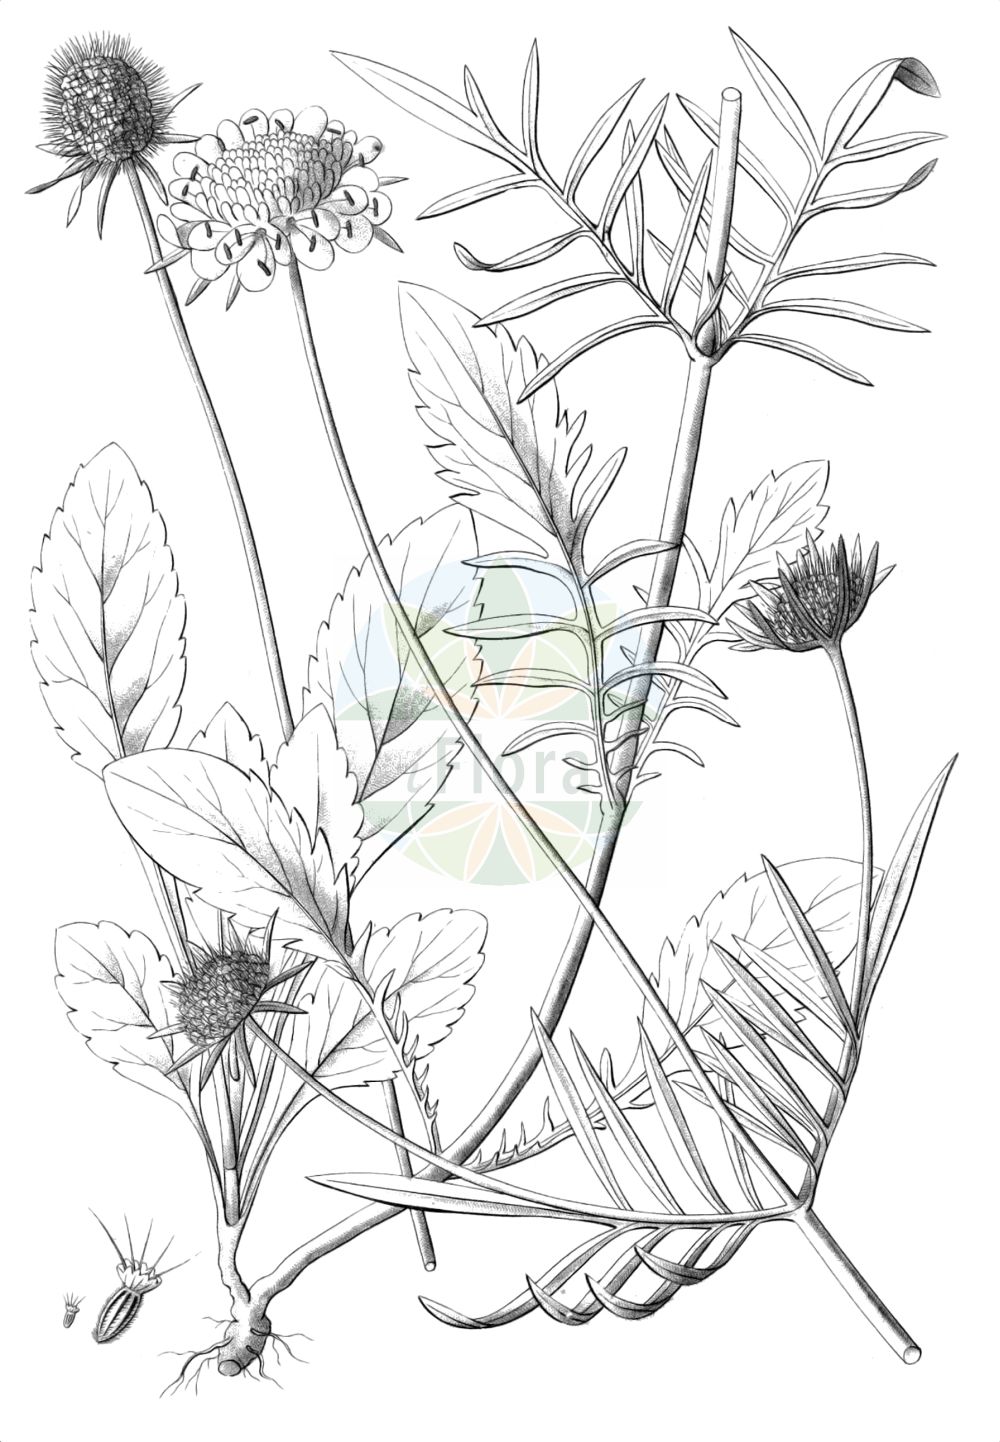 Historische Abbildung von Scabiosa lucida (Glänzende Skabiose - Glossy Scabious). Das Bild zeigt Blatt, Bluete, Frucht und Same. ---- Historical Drawing of Scabiosa lucida (Glänzende Skabiose - Glossy Scabious). The image is showing leaf, flower, fruit and seed.(Scabiosa lucida,Glänzende Skabiose,Glossy Scabious,Scabiosa lucida,Scabiosa opaca,Scabiosa pubescens,Glaenzende Skabiose,Glossy Scabious,Shining Scabious,Scabiosa,Skabiose,Scabious,Caprifoliaceae,Geißblattgewächse,Honeysuckle family,Blatt,Bluete,Frucht,Same,leaf,flower,fruit,seed,Reichenbach (1823-1832))